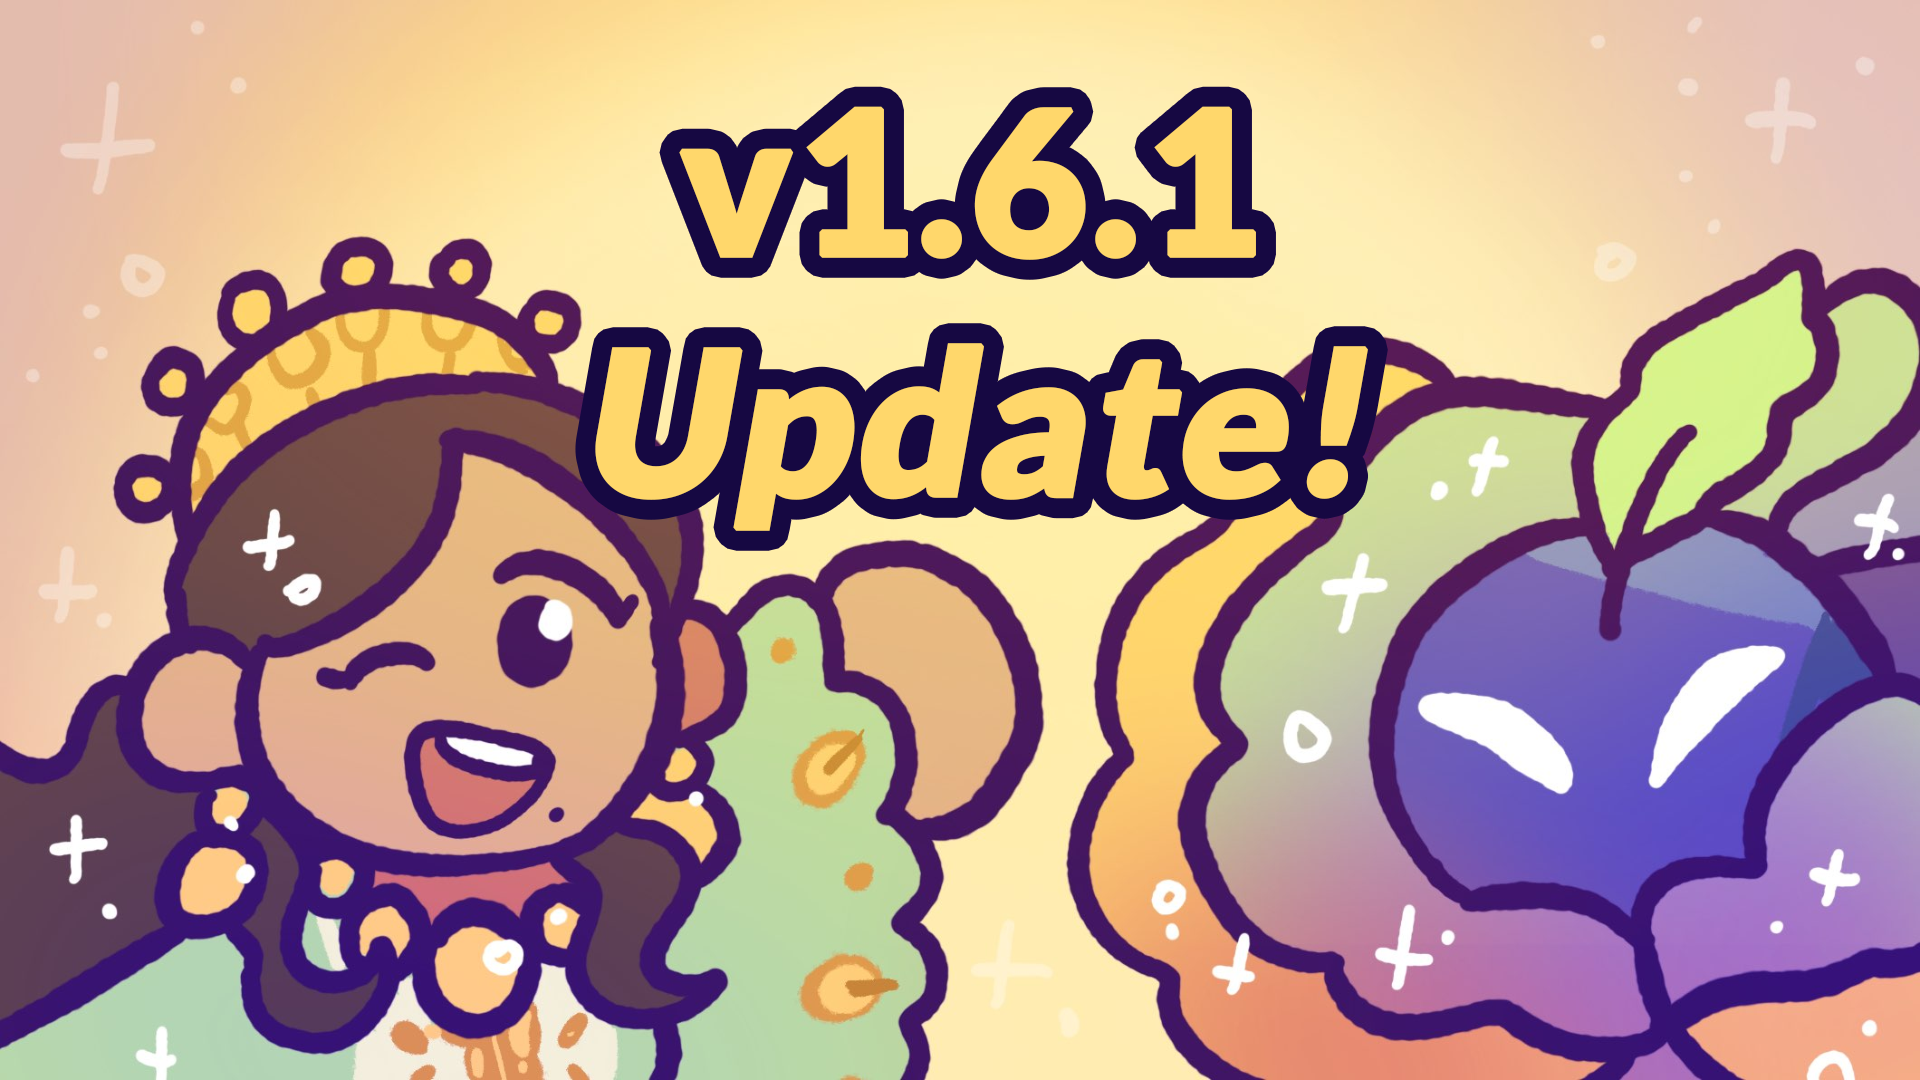 v1.6.1 Update!